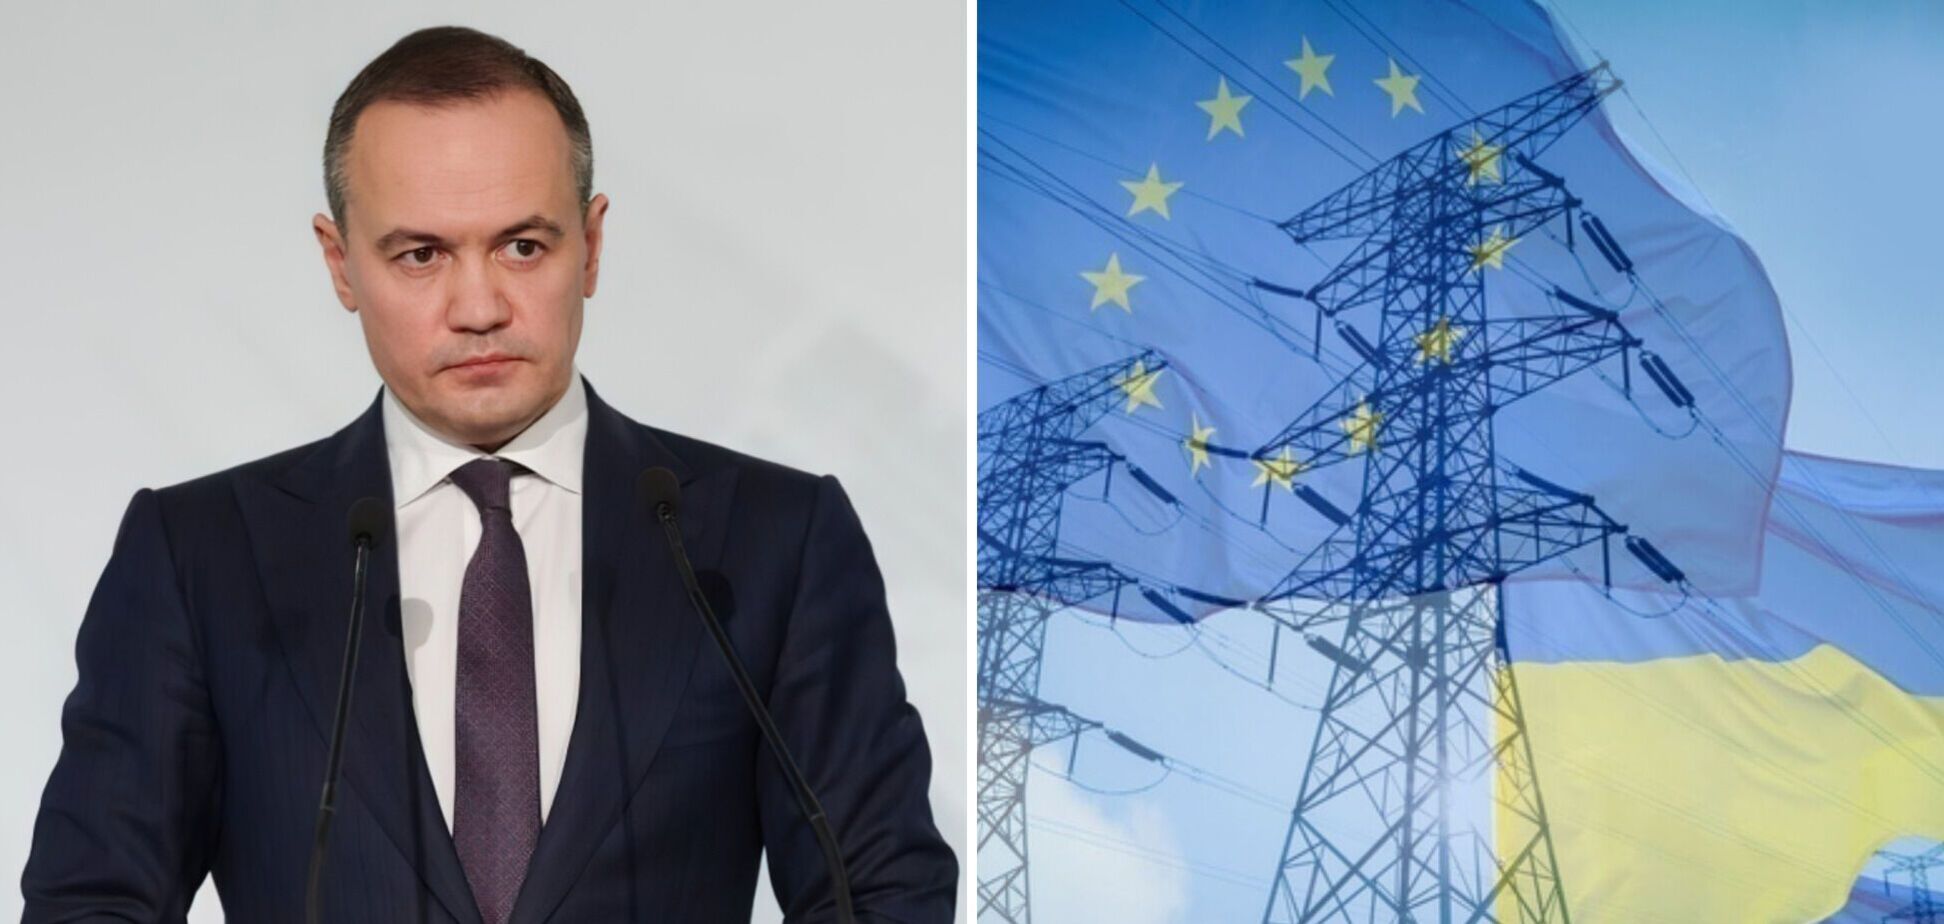 Энергетическая стратегия Украины должна учитывать потребности Евросоюза, - гендиректор ДТЭК